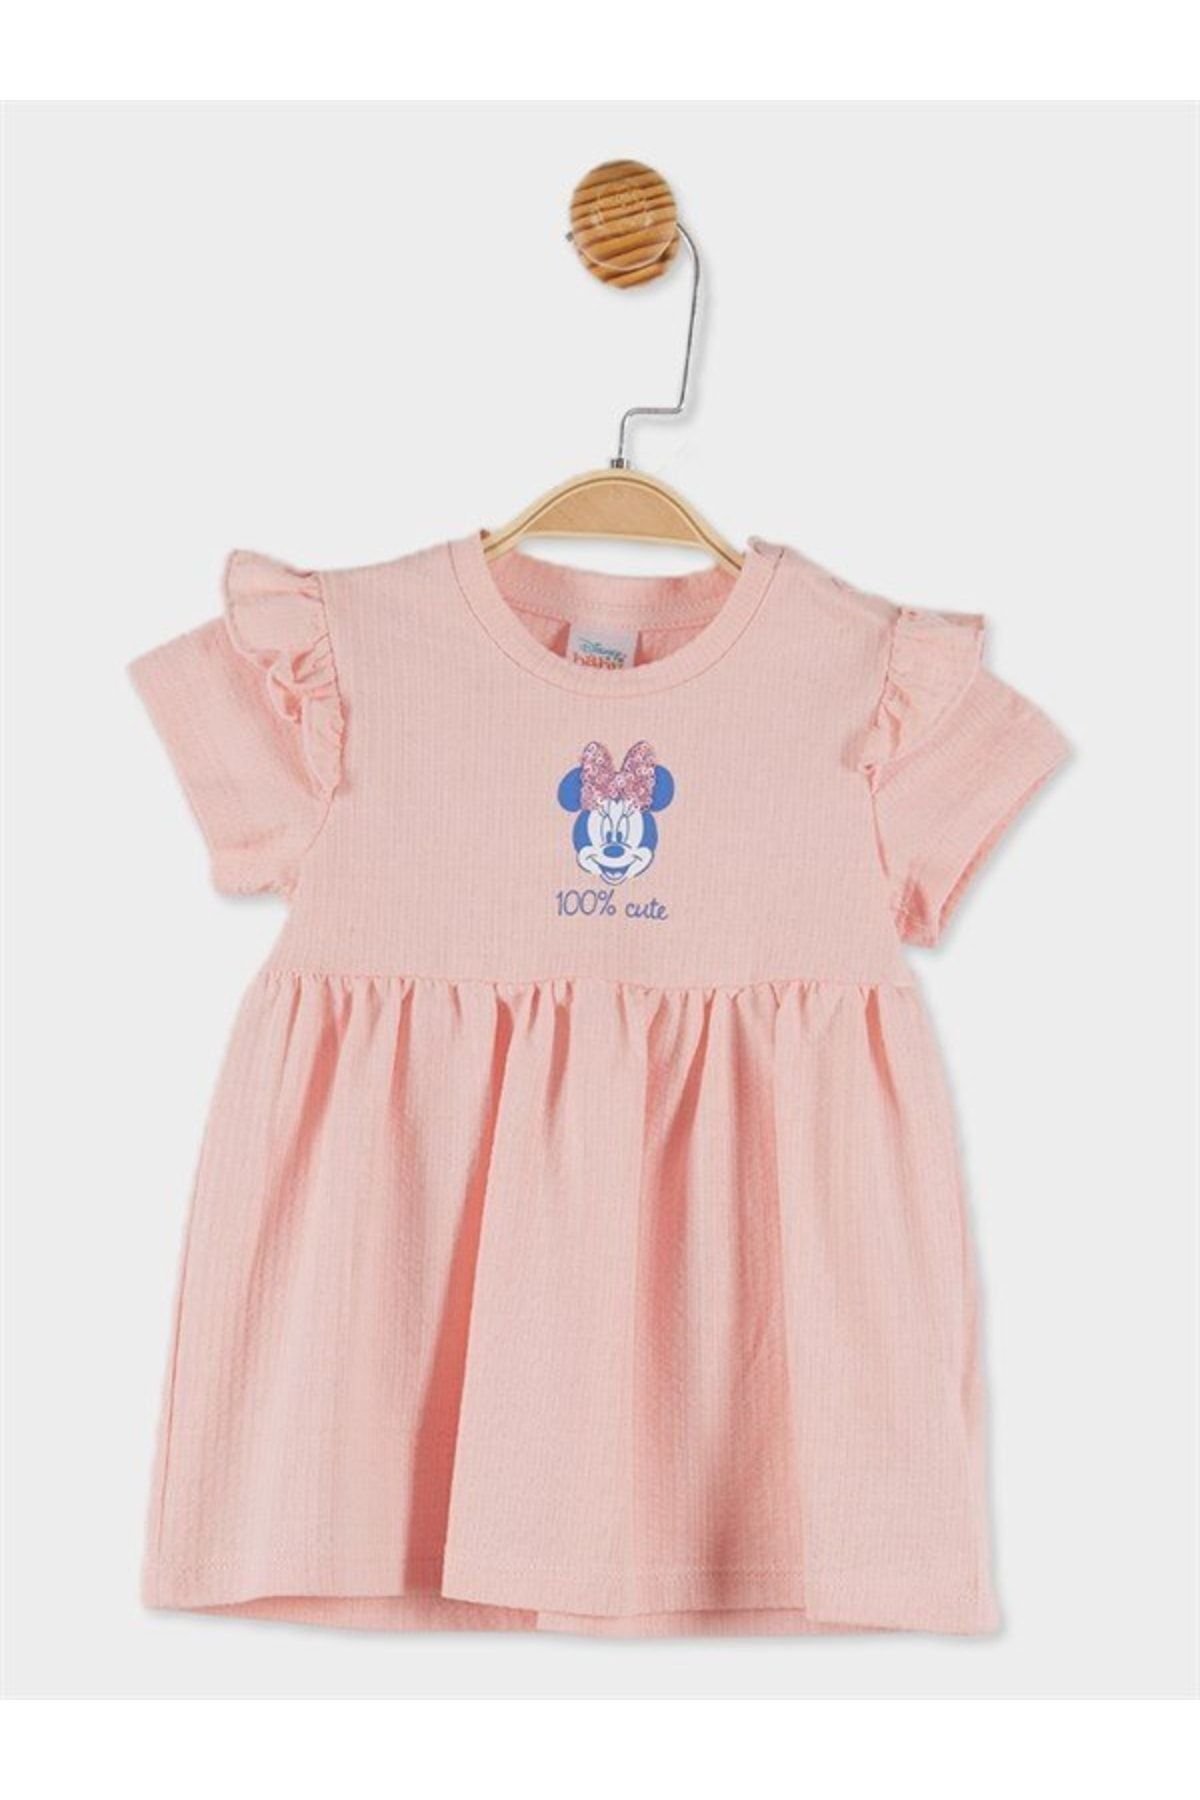 DİSNEY Minnie Mouse Lisanslı Kız Bebek Baskılı Elbise